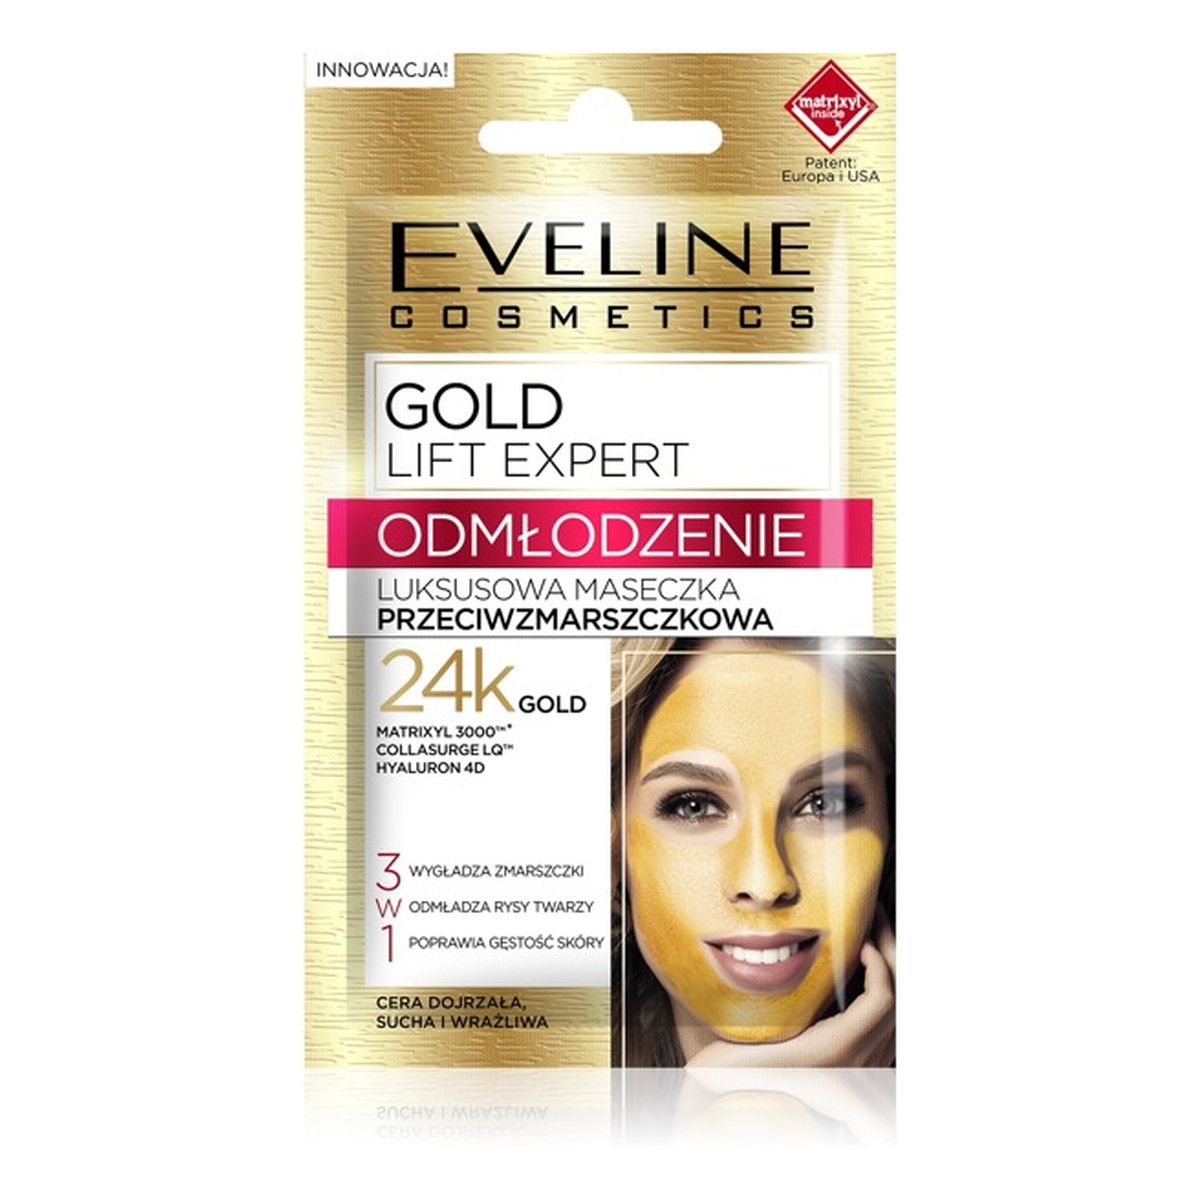 Eveline Gold Lift Expert Odmłodzenie maseczka przeciwzmarszczkowa luksusowa - saszetka 7ml